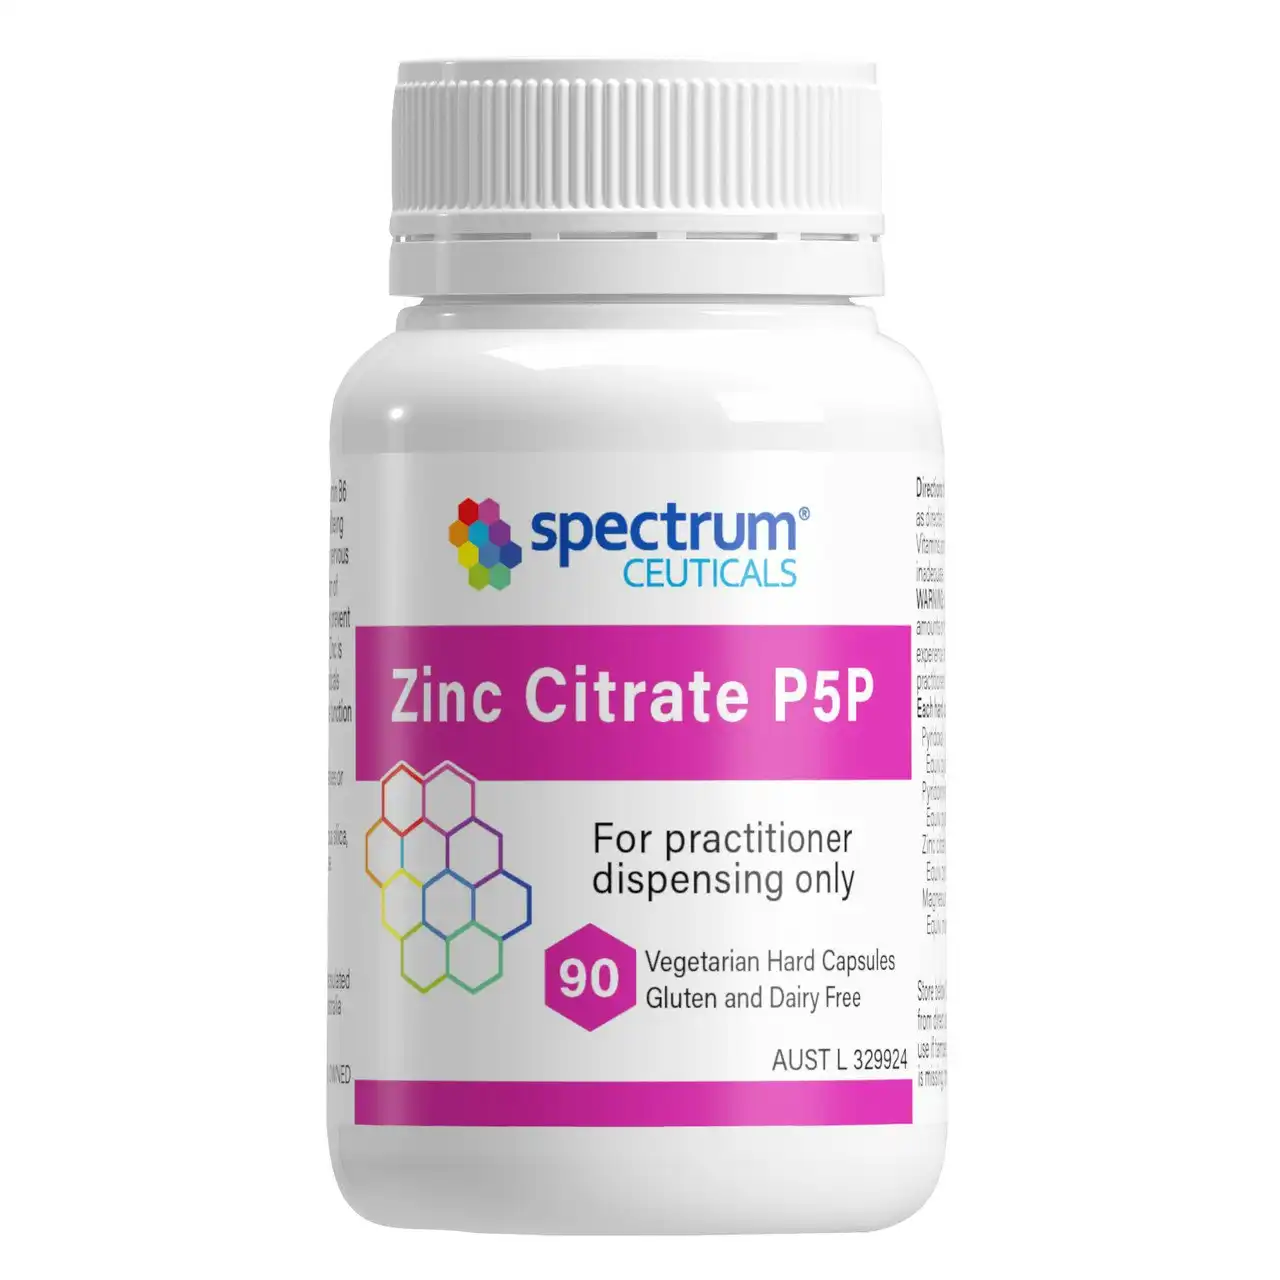 Spectrumceuticals Zinc Citrate P5P Capsules 90